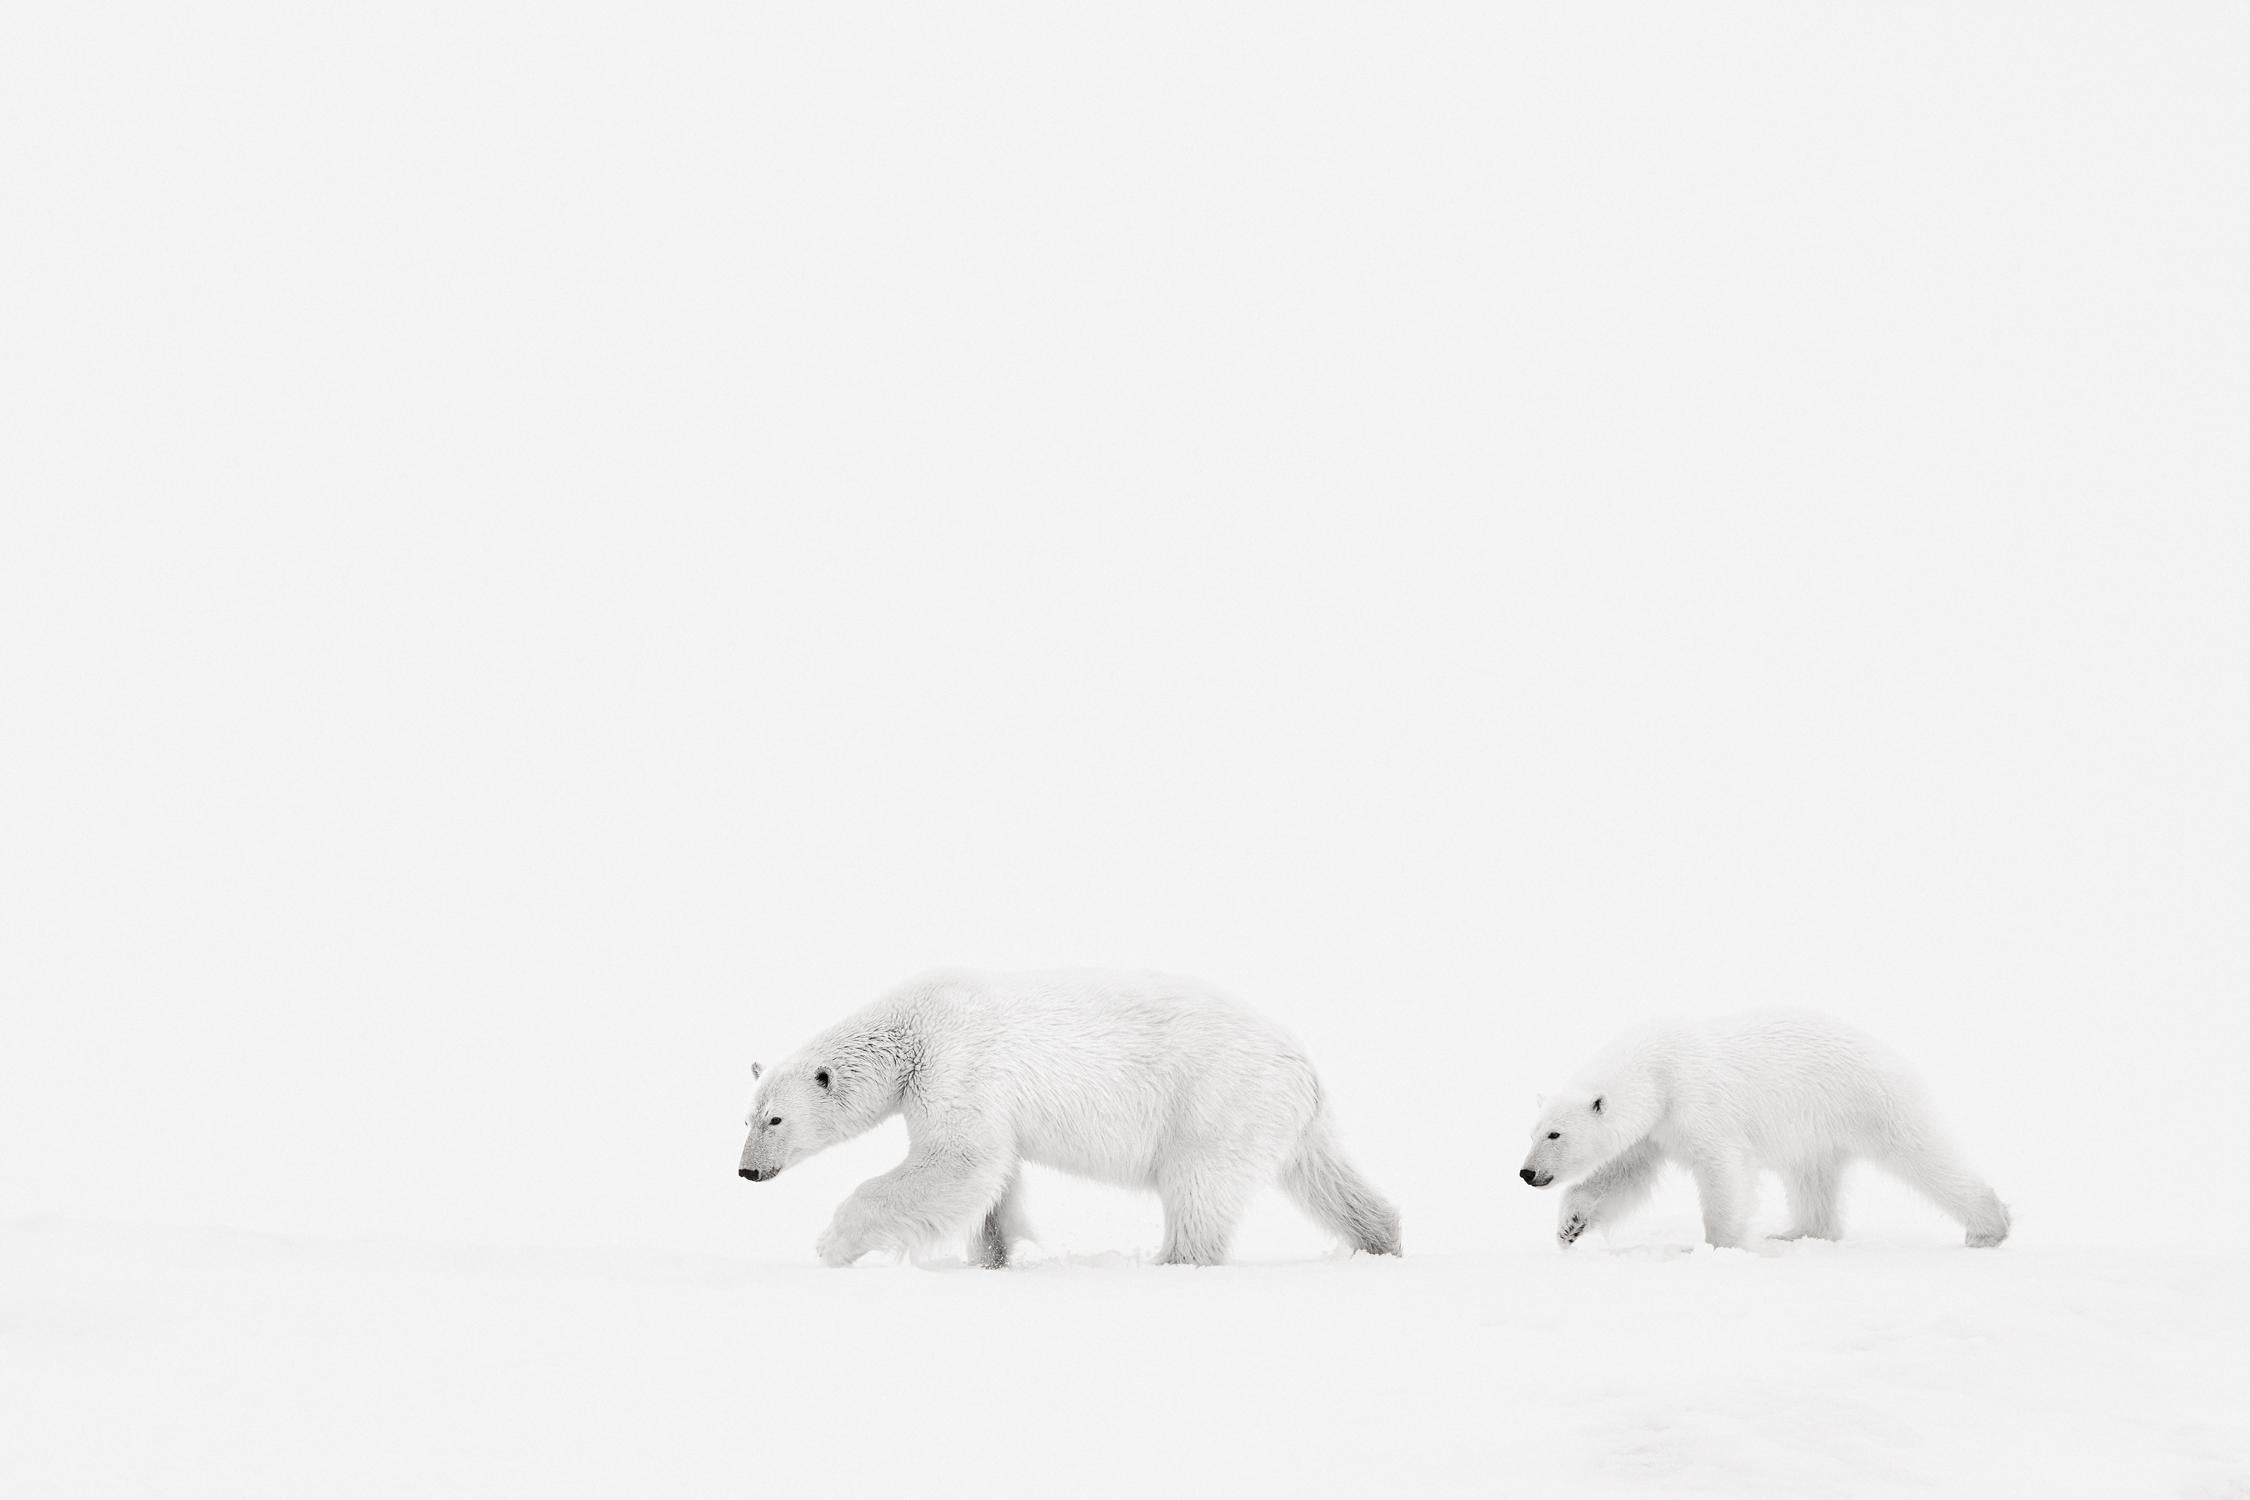 Drew Doggett Black and White Photograph – Minimaler Hintergrund mit Mutter und Kub beim Spaziergang in der Arktis